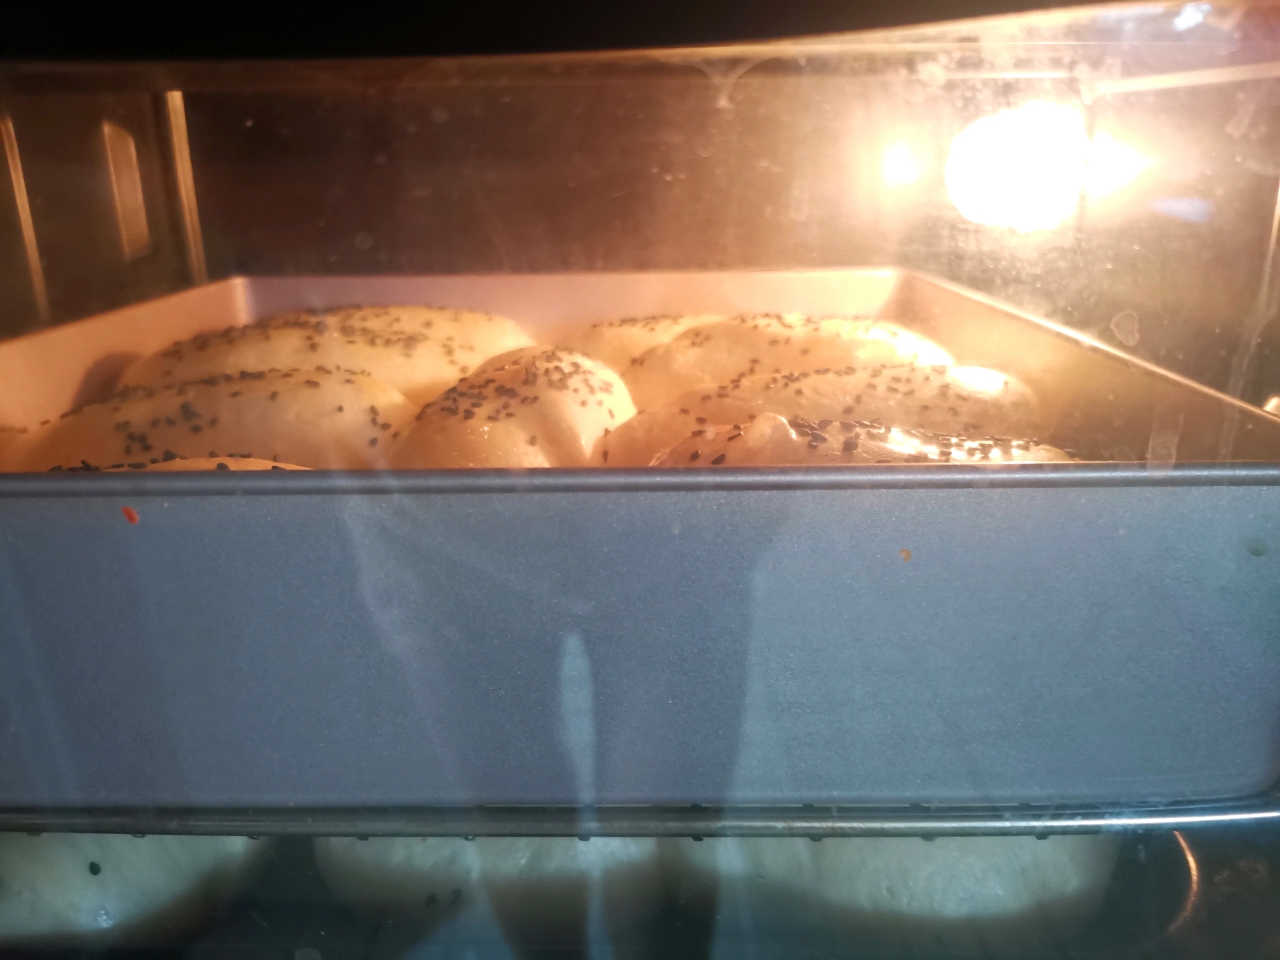 低温冷藏17小时中种面团之甜面包配方